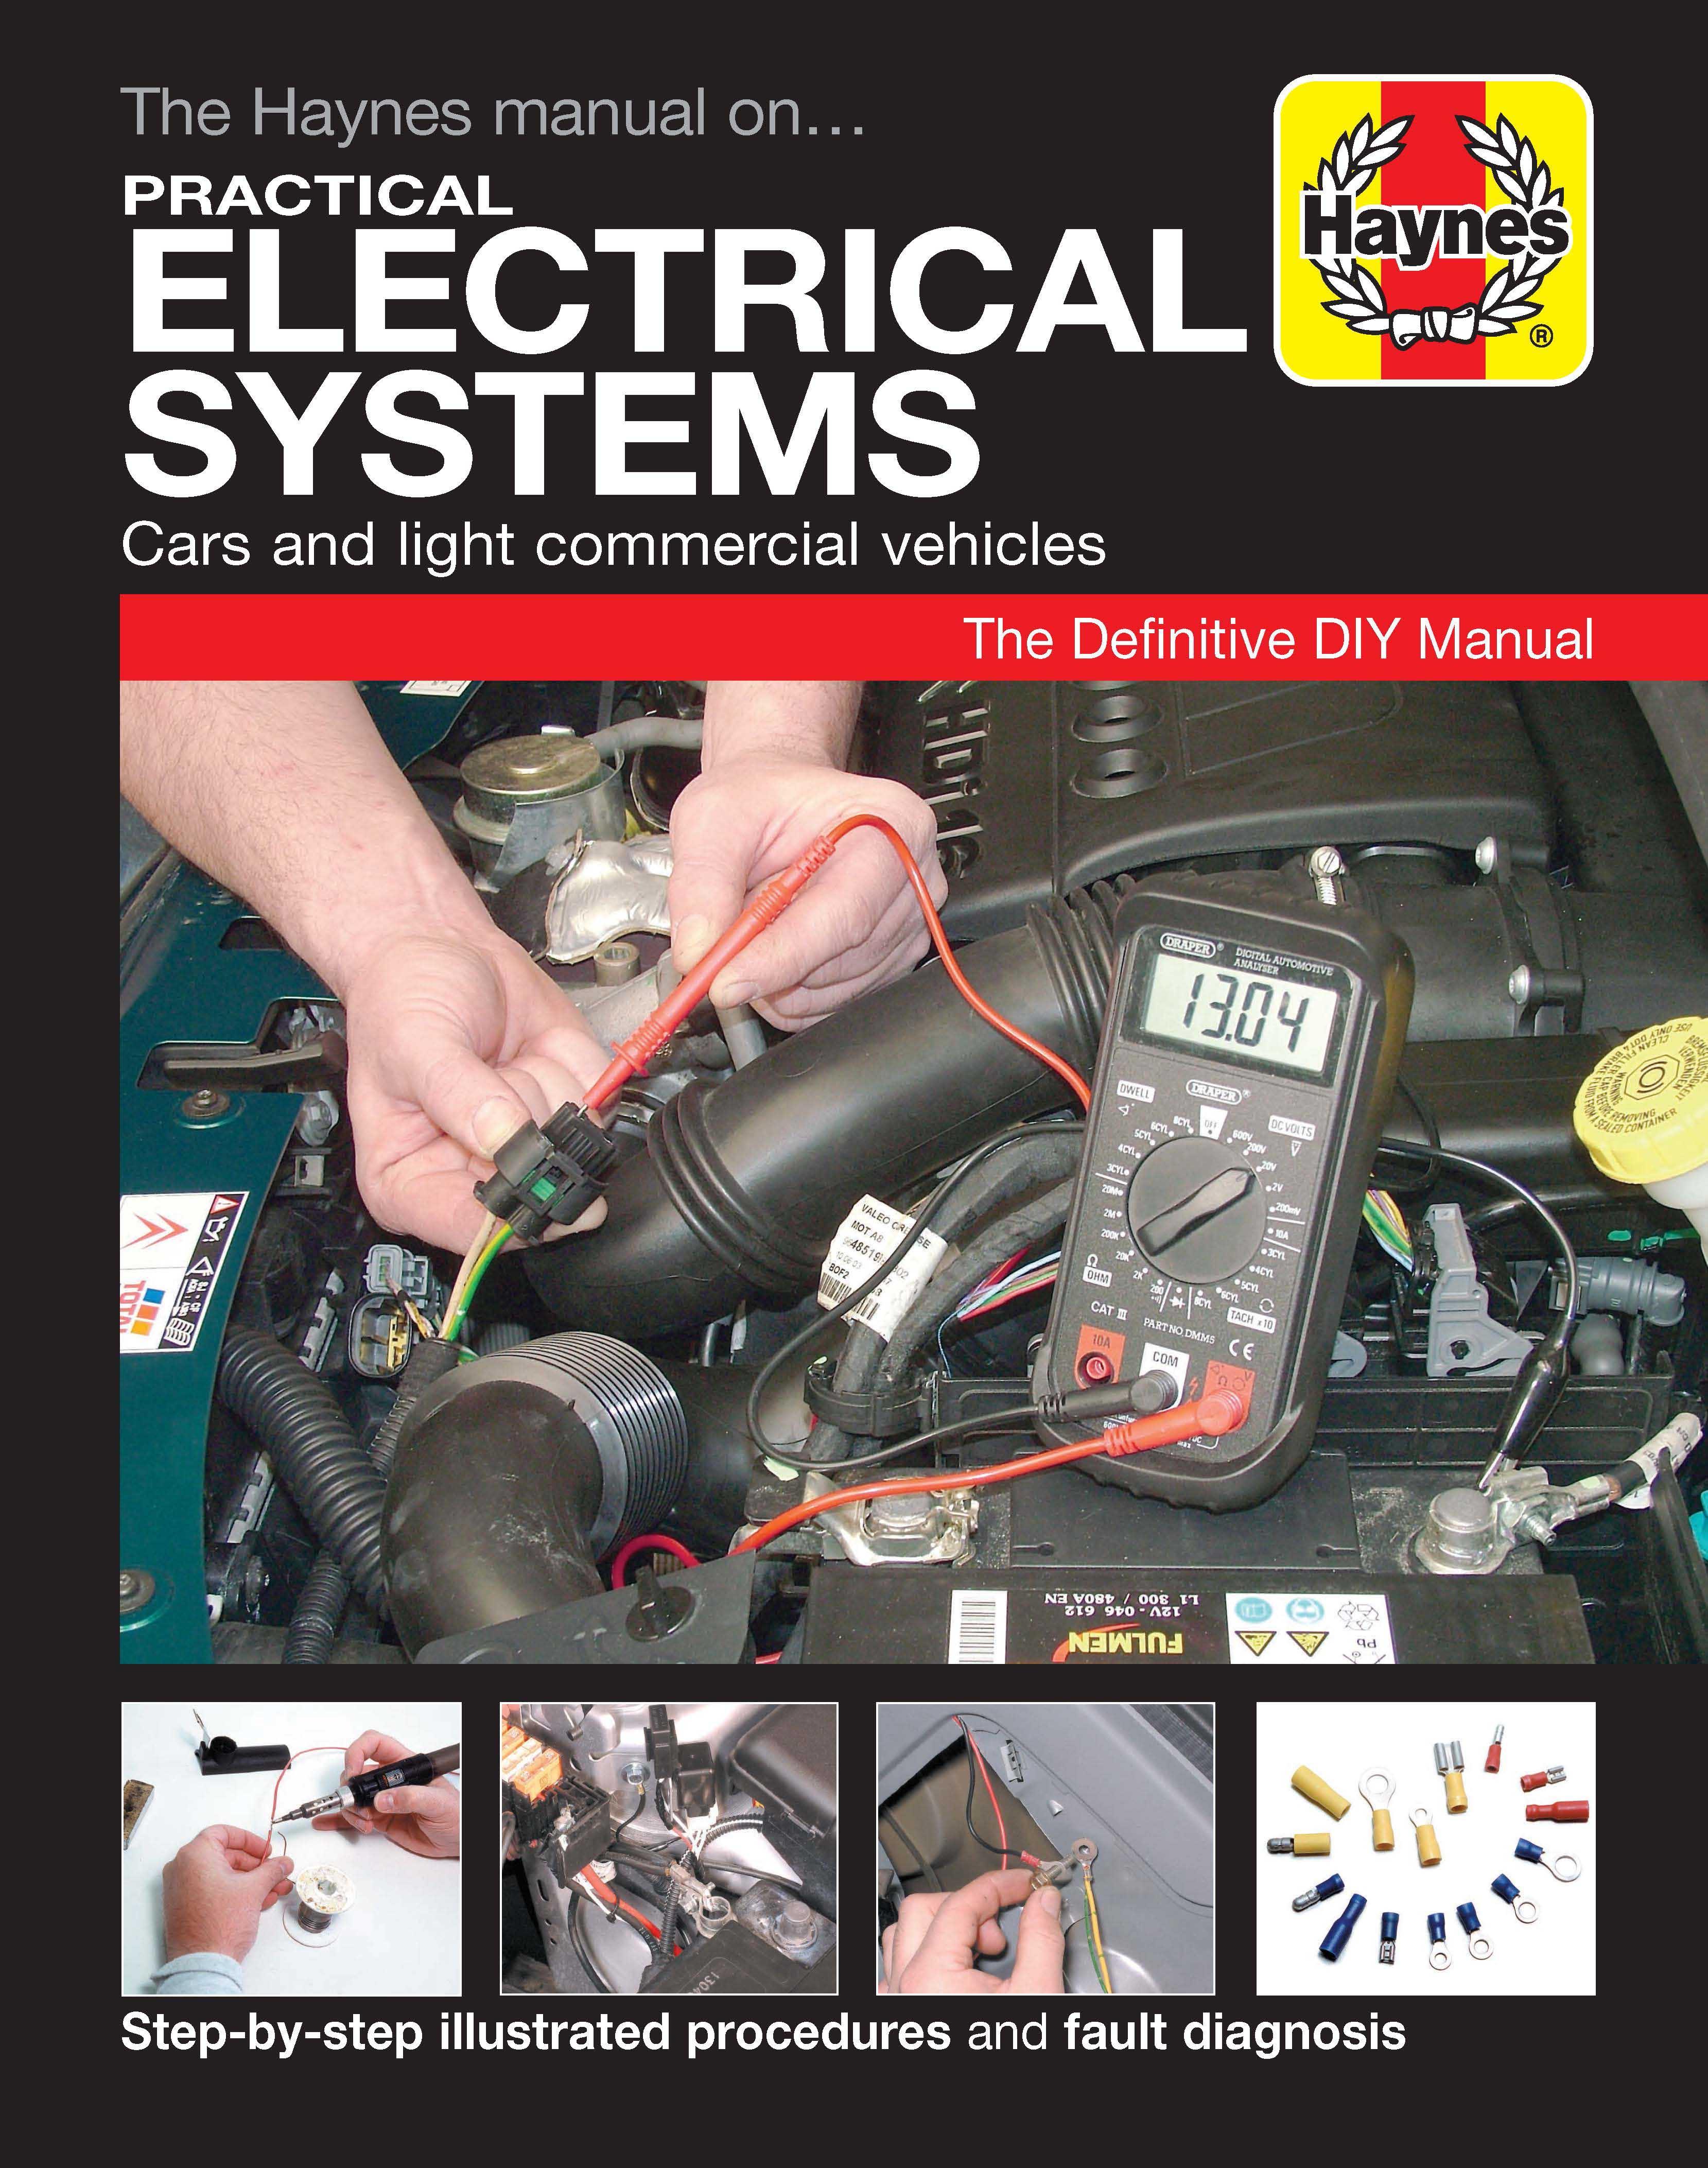 Haynes Practical Electrical Manual